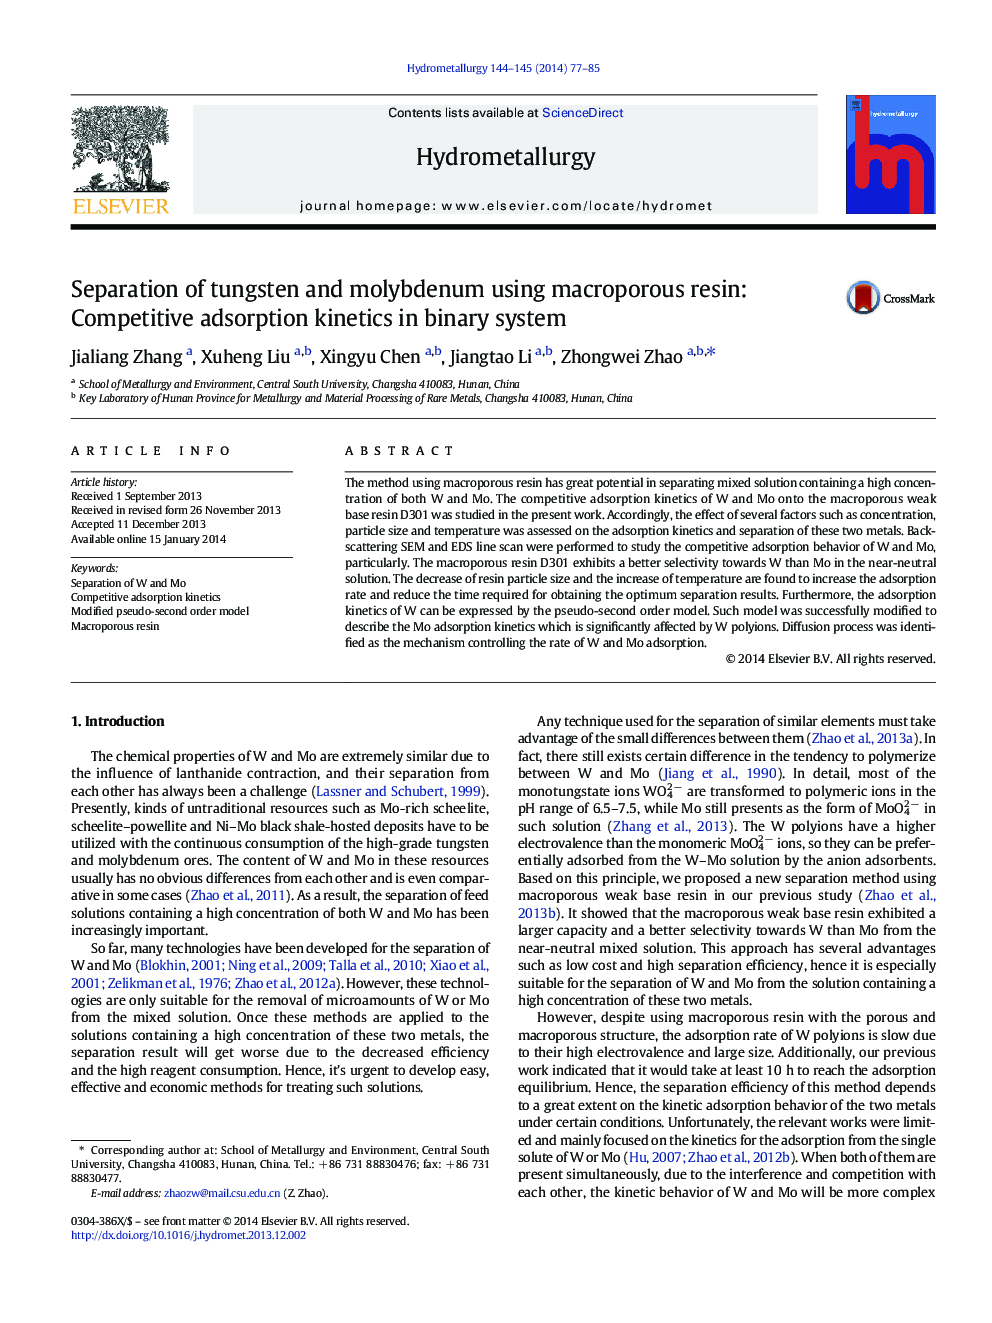 جداسازی تنگستن و مولیبدن با استفاده از رزین بزرگ پوپور: سینتیک جذب رقابت در سیستم دودویی 